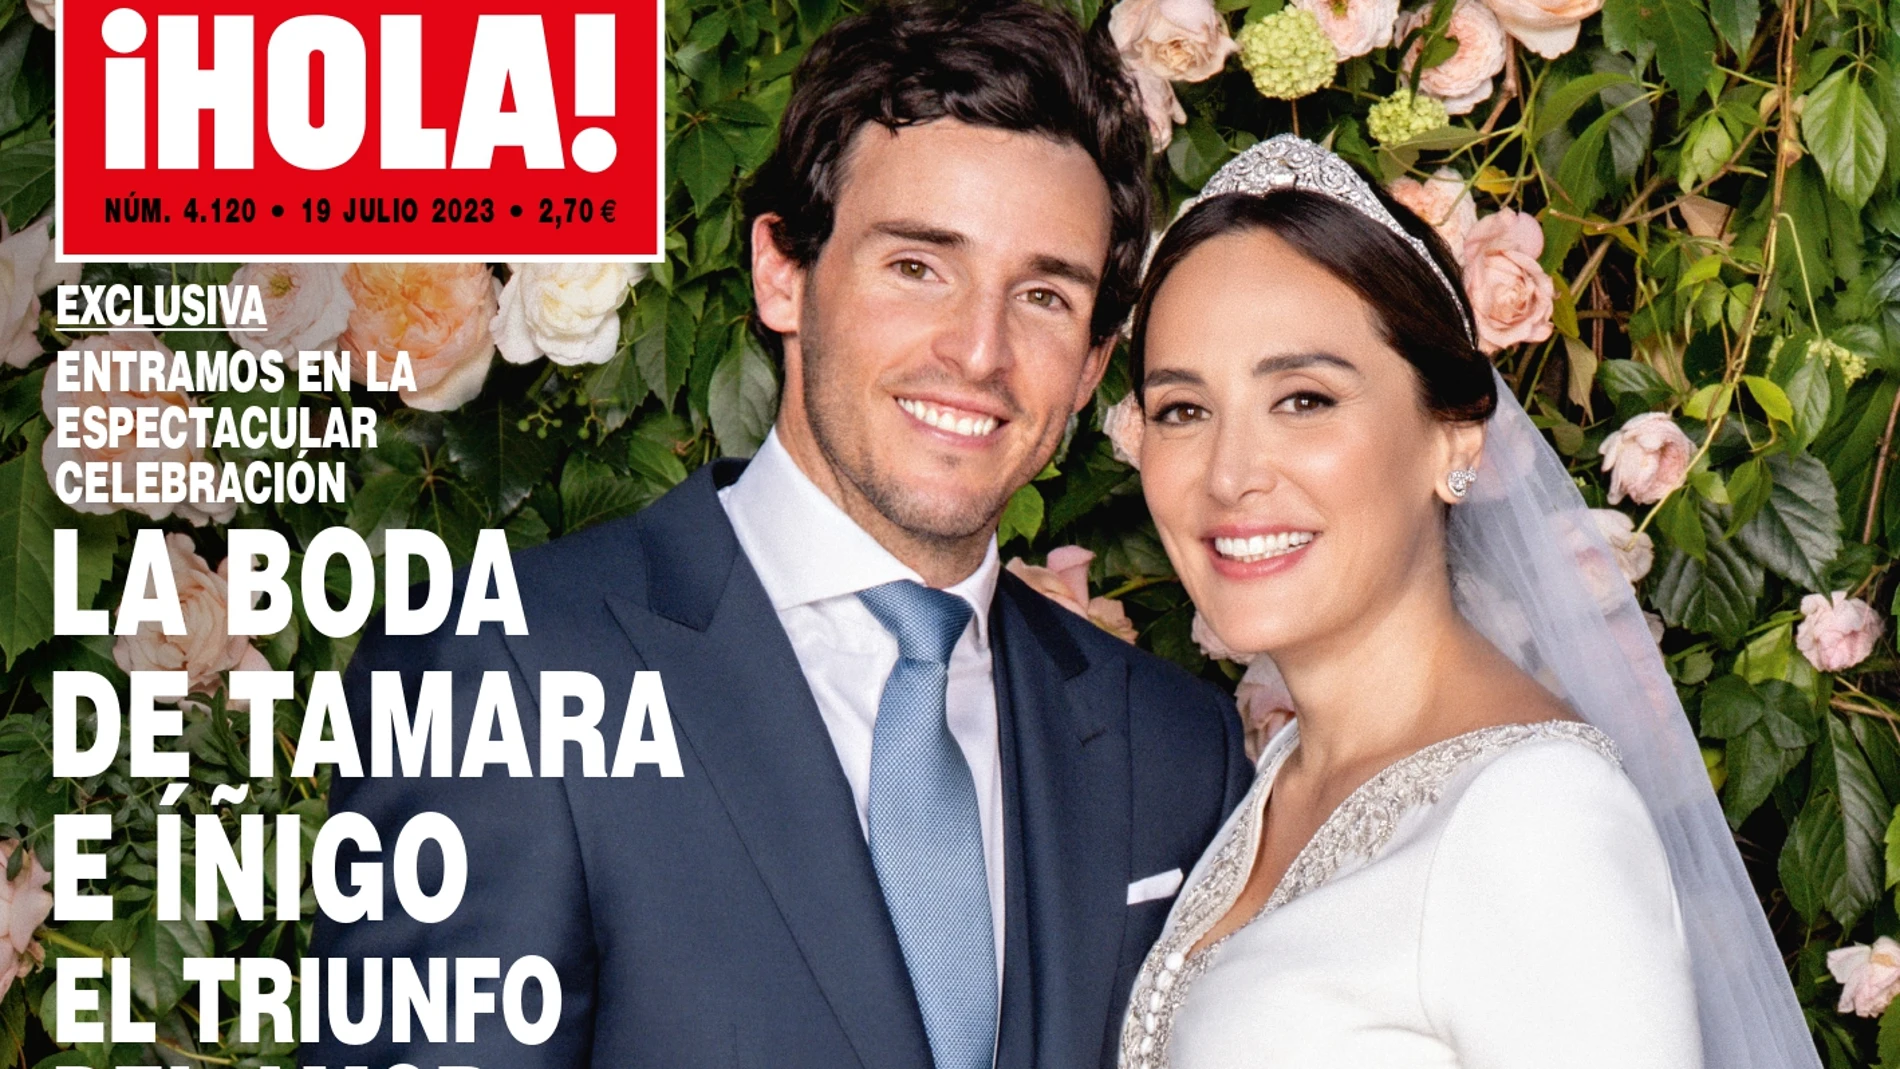 La portada de &#39;¡Hola!&#39; con la boda de Tamara Falcó e Íñigo Onieva